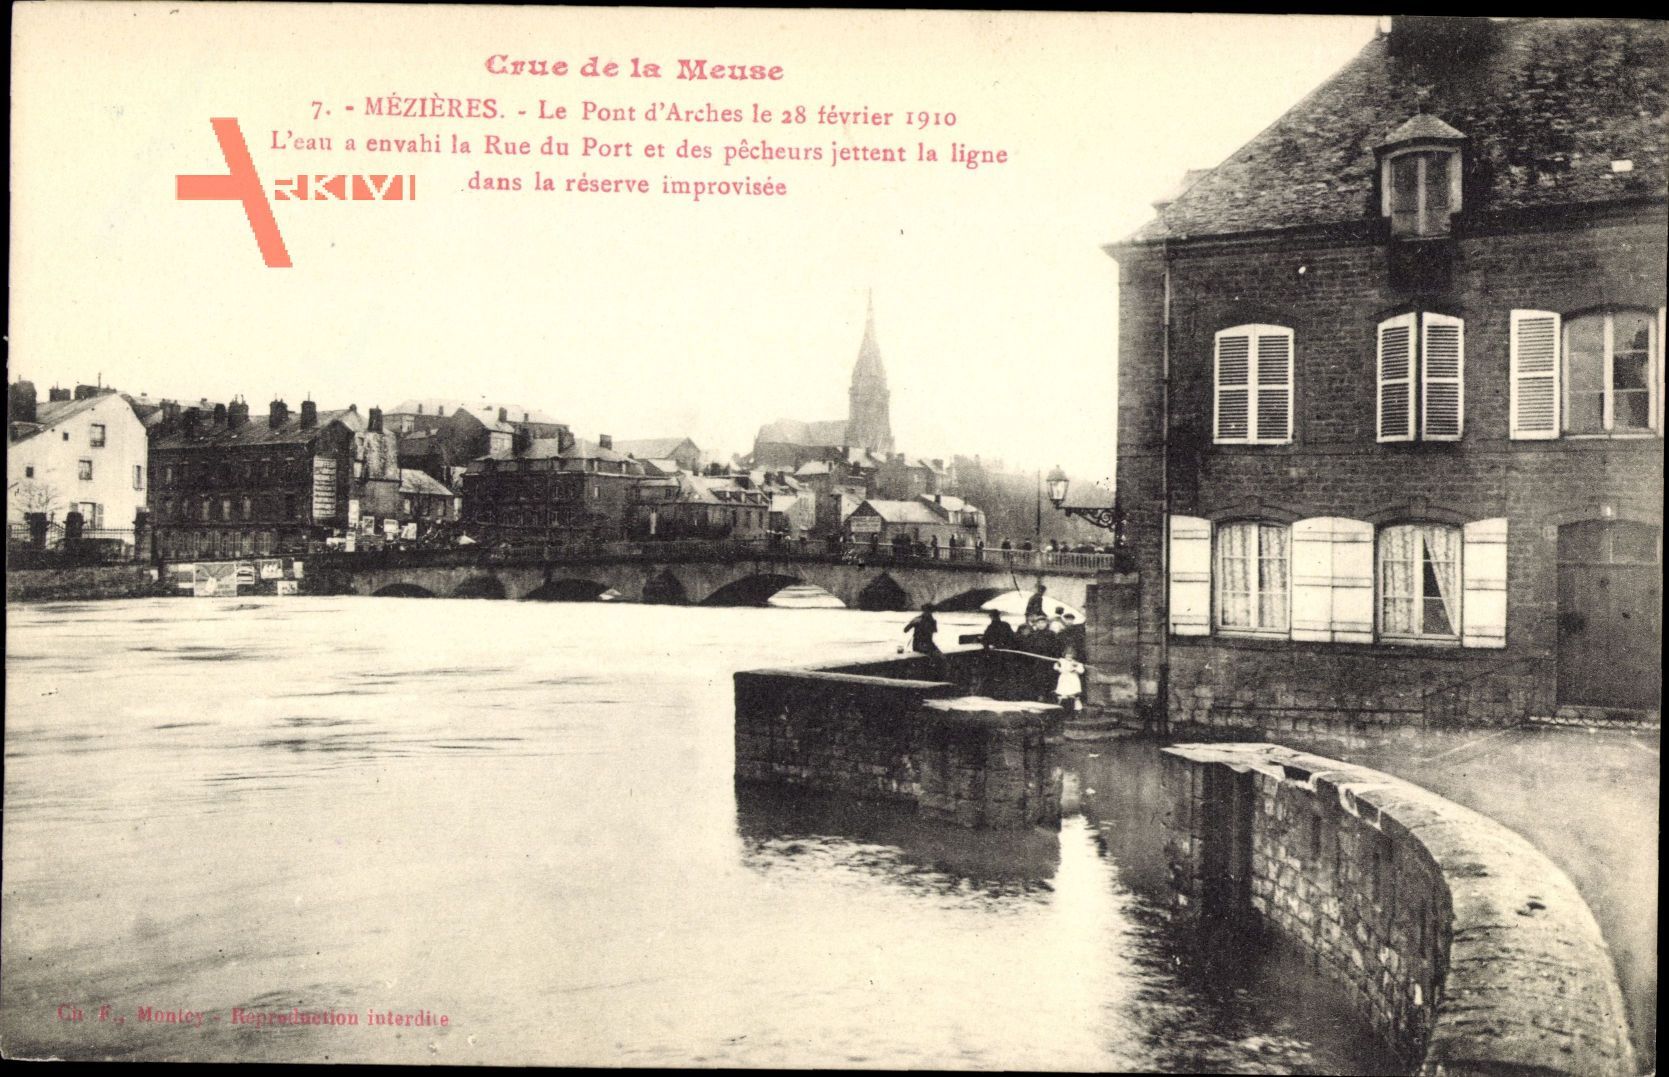 Mézières Ardennes, Le Pont d'Arches 1910, Crue de la Meuse, Rue du Port